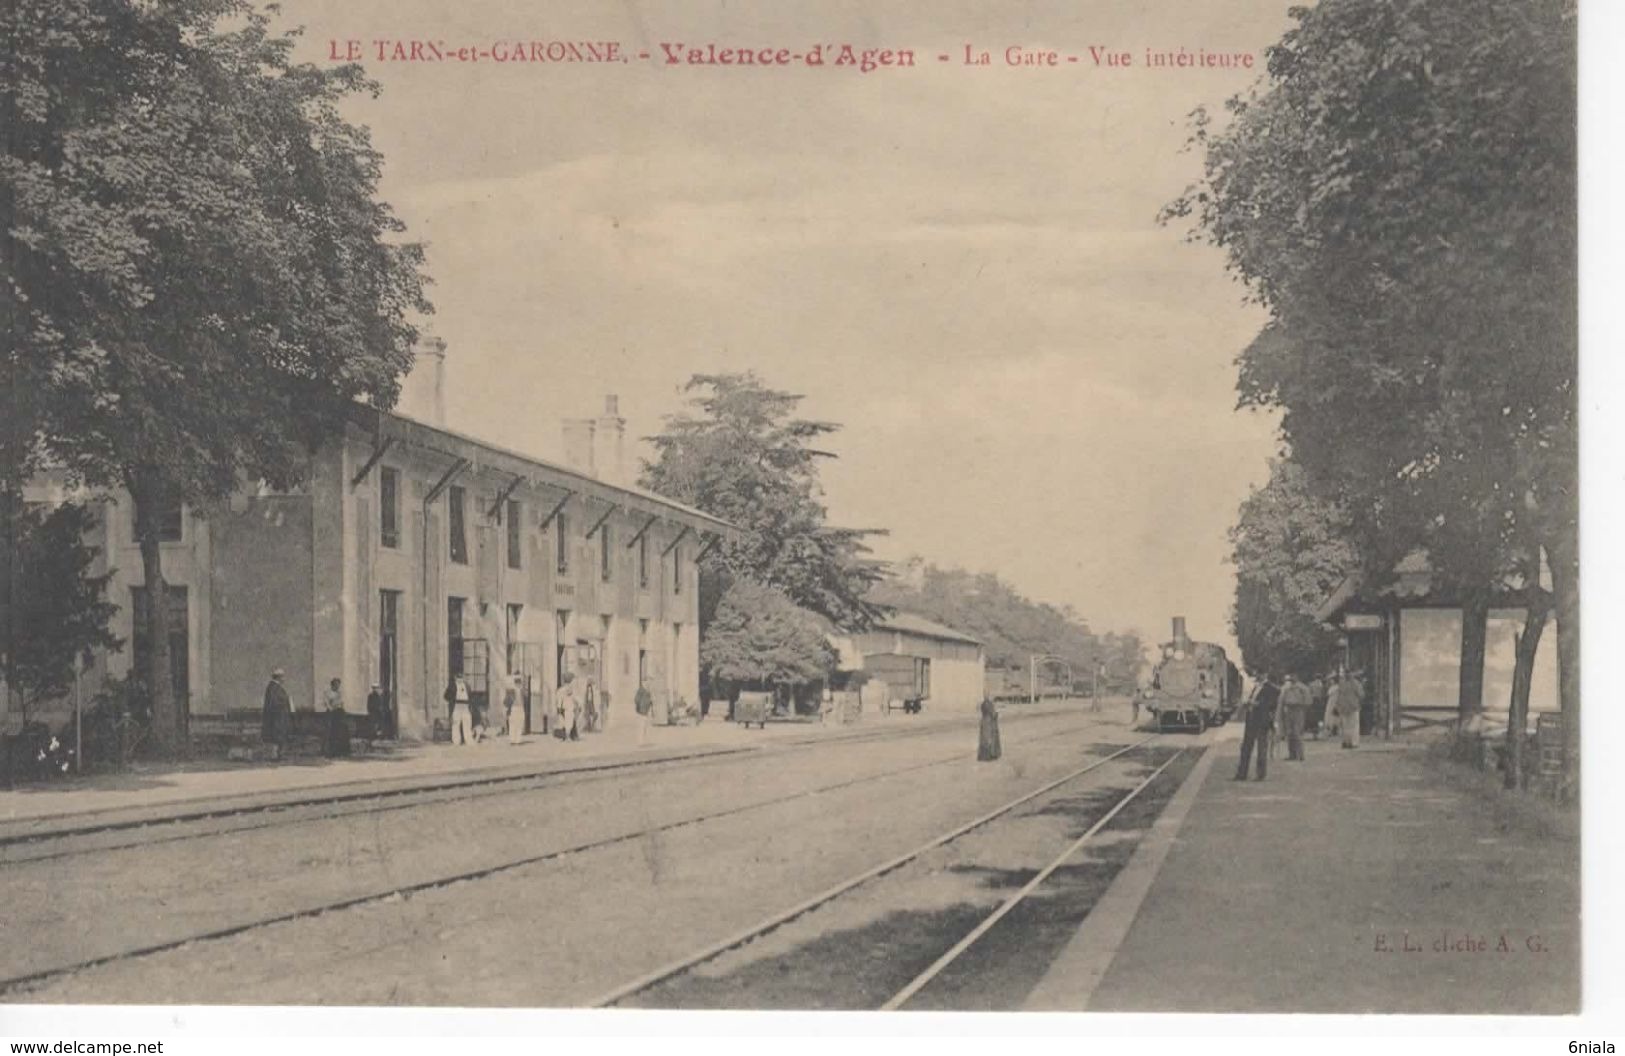 694 82  VALENCE D'AGEN  LA GARE  Vue Intérieure     Train, Locomotive, Personnes, Animation, Wagons Tarn Et Garonne - Valence